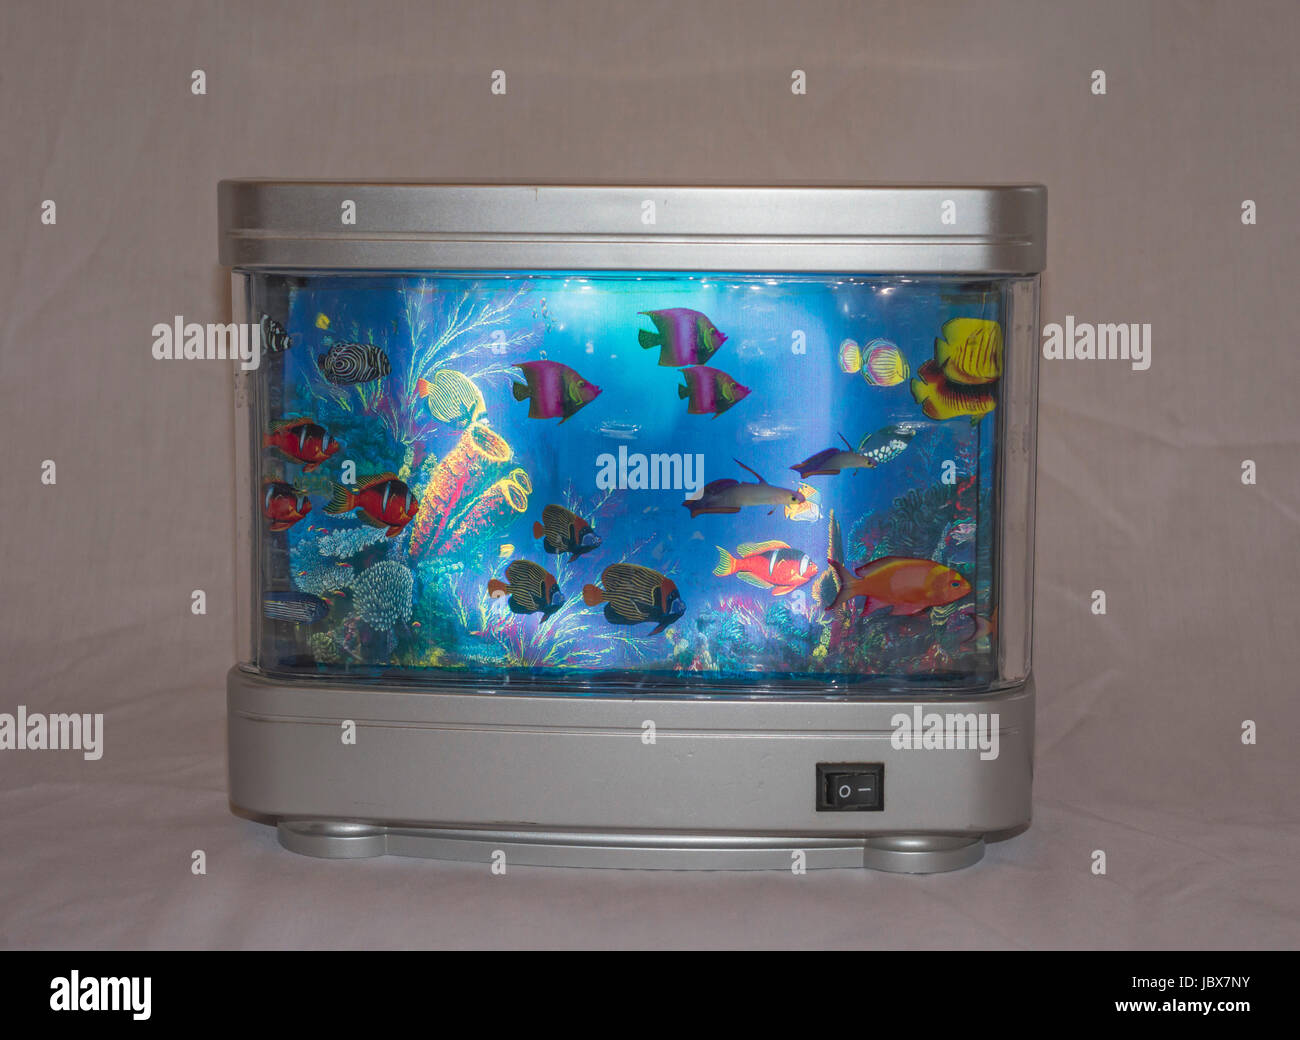 Künstliche tropische Fische Aquarium dekorative Lampe mit bunt künstlichen  Fisch und Meer in Bewegung Stockfotografie - Alamy